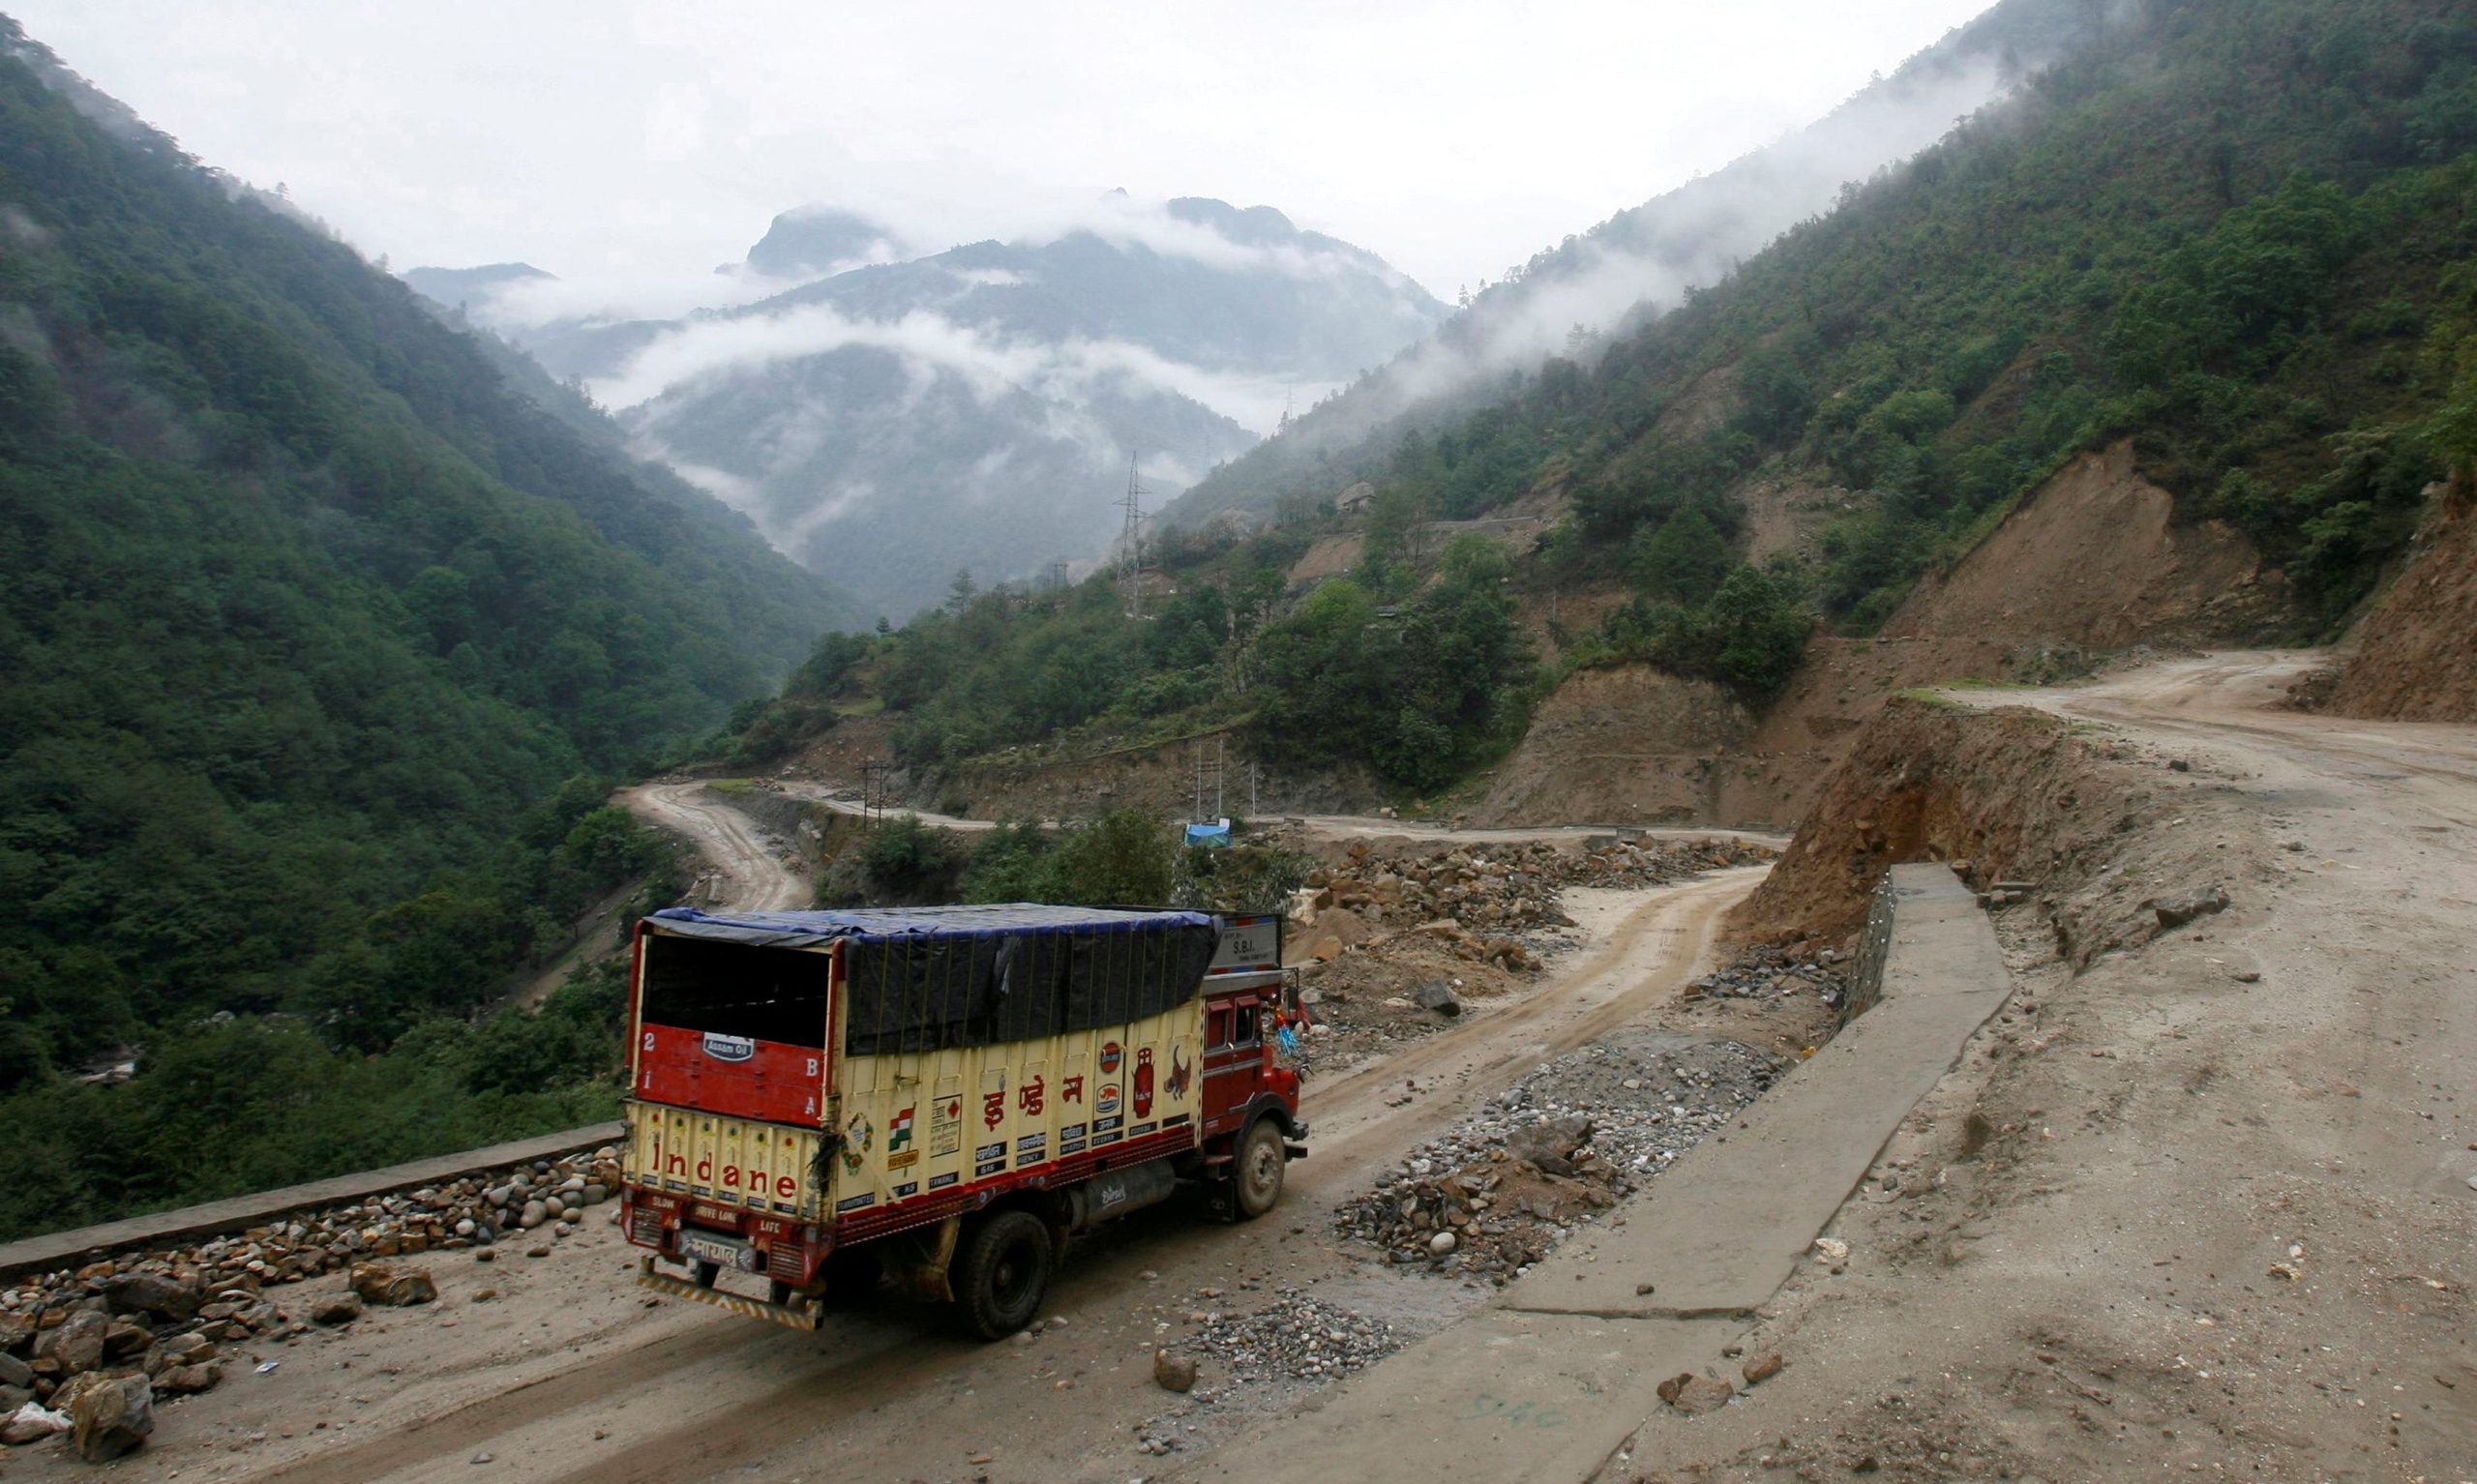 主权争议边界邦建水电厂  中国:印度无权开发“藏南地区”